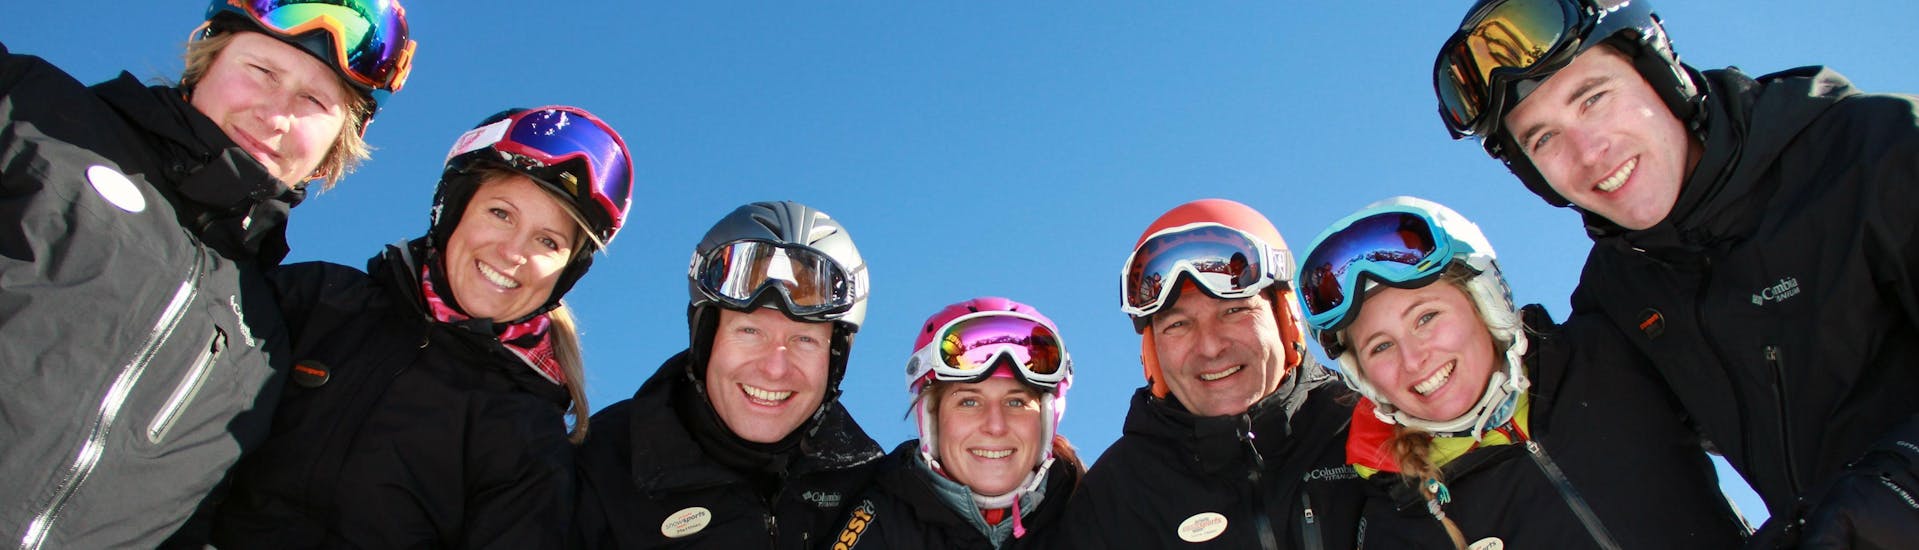 Privater Kinder-Skikurs für alle Altersgruppen - Nachmittag.